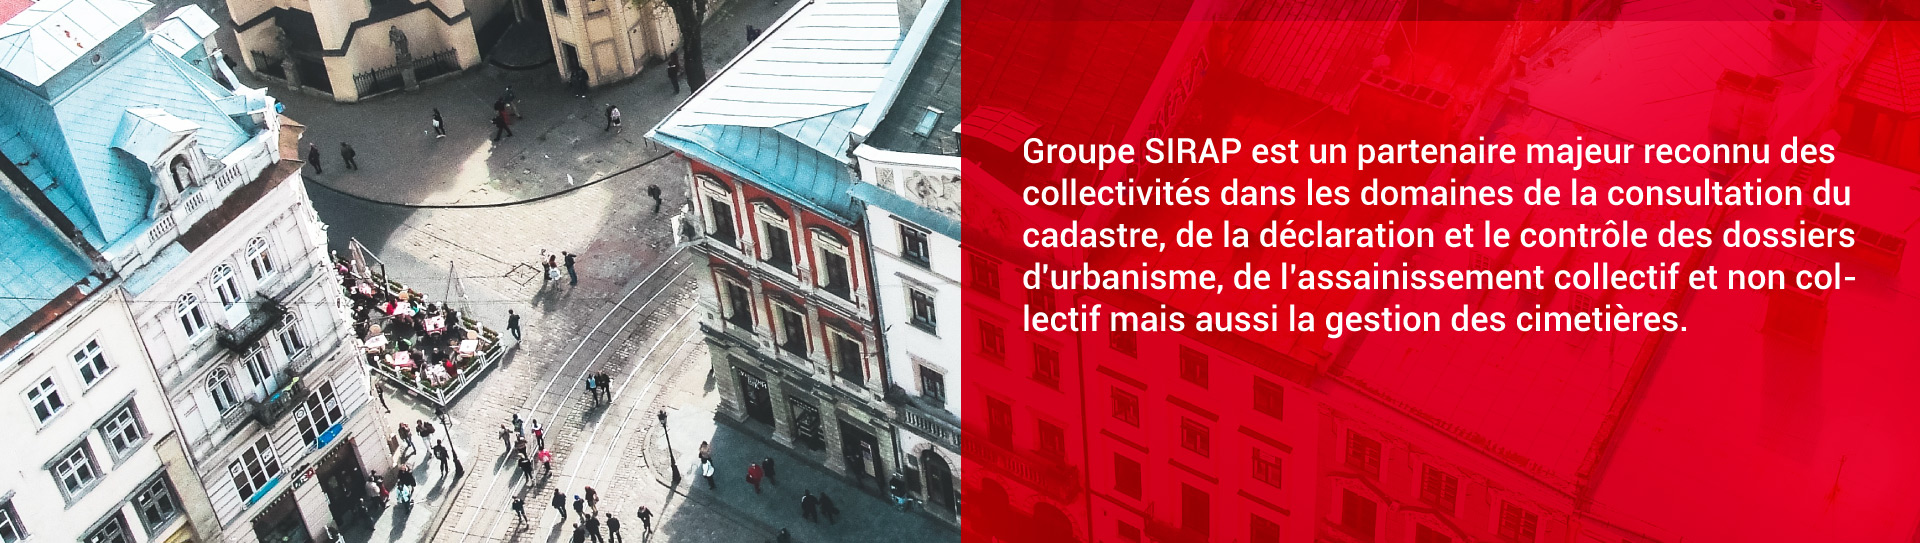 Groupe SIRAP est un partenaire majeur reconnu des collectivités.